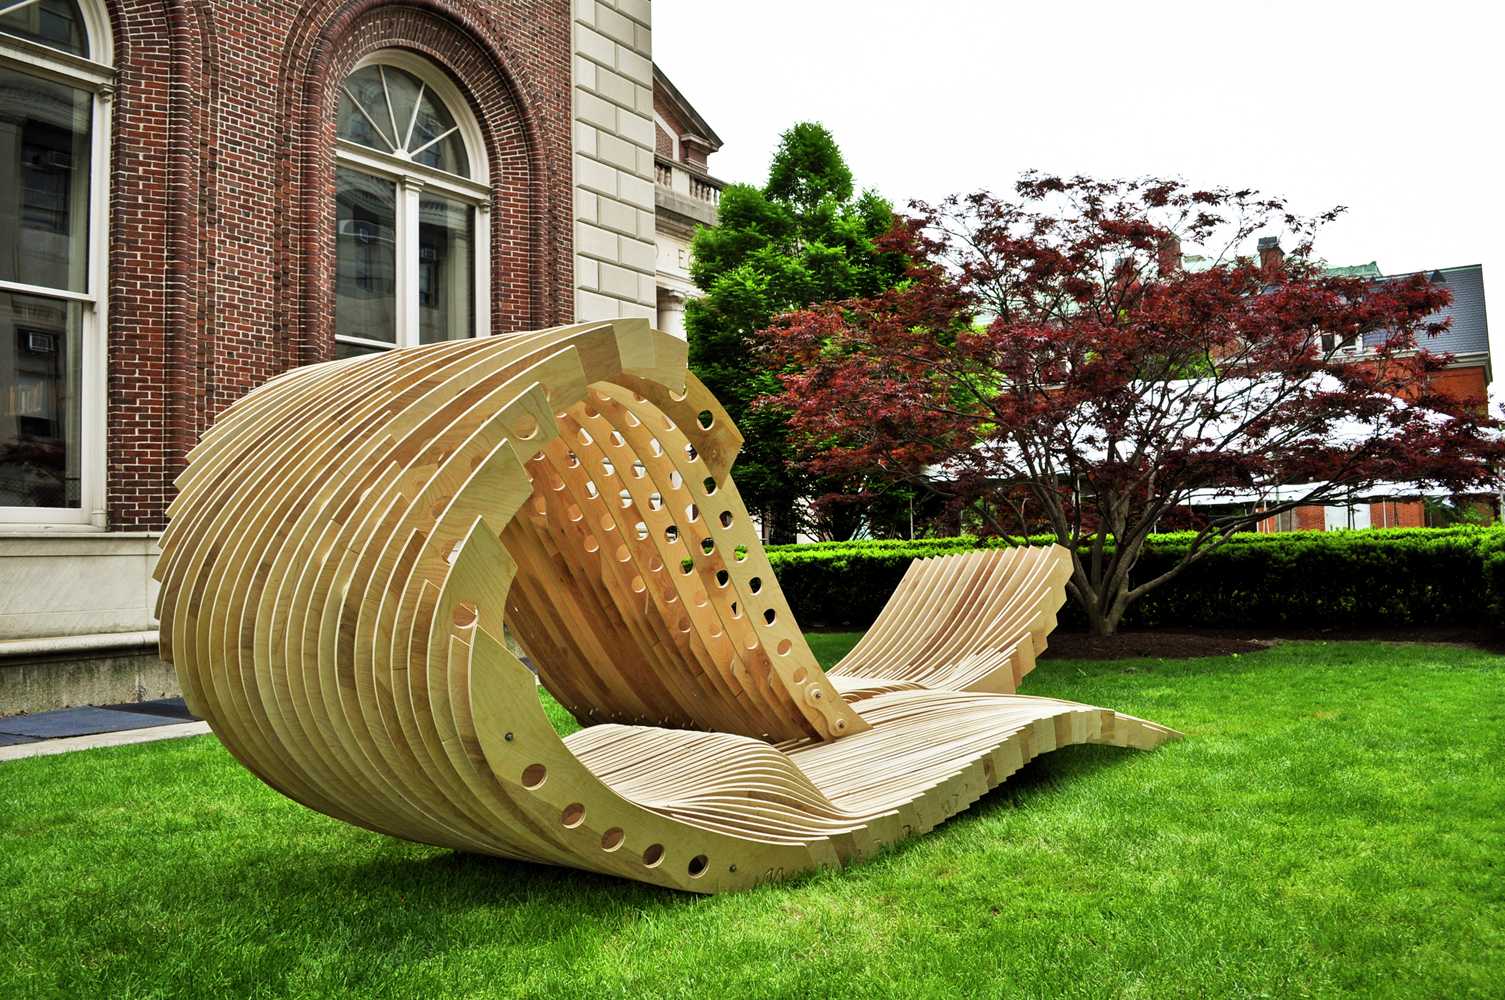 100 лучших идей: скамейки из дерева для дачи своими руками фото